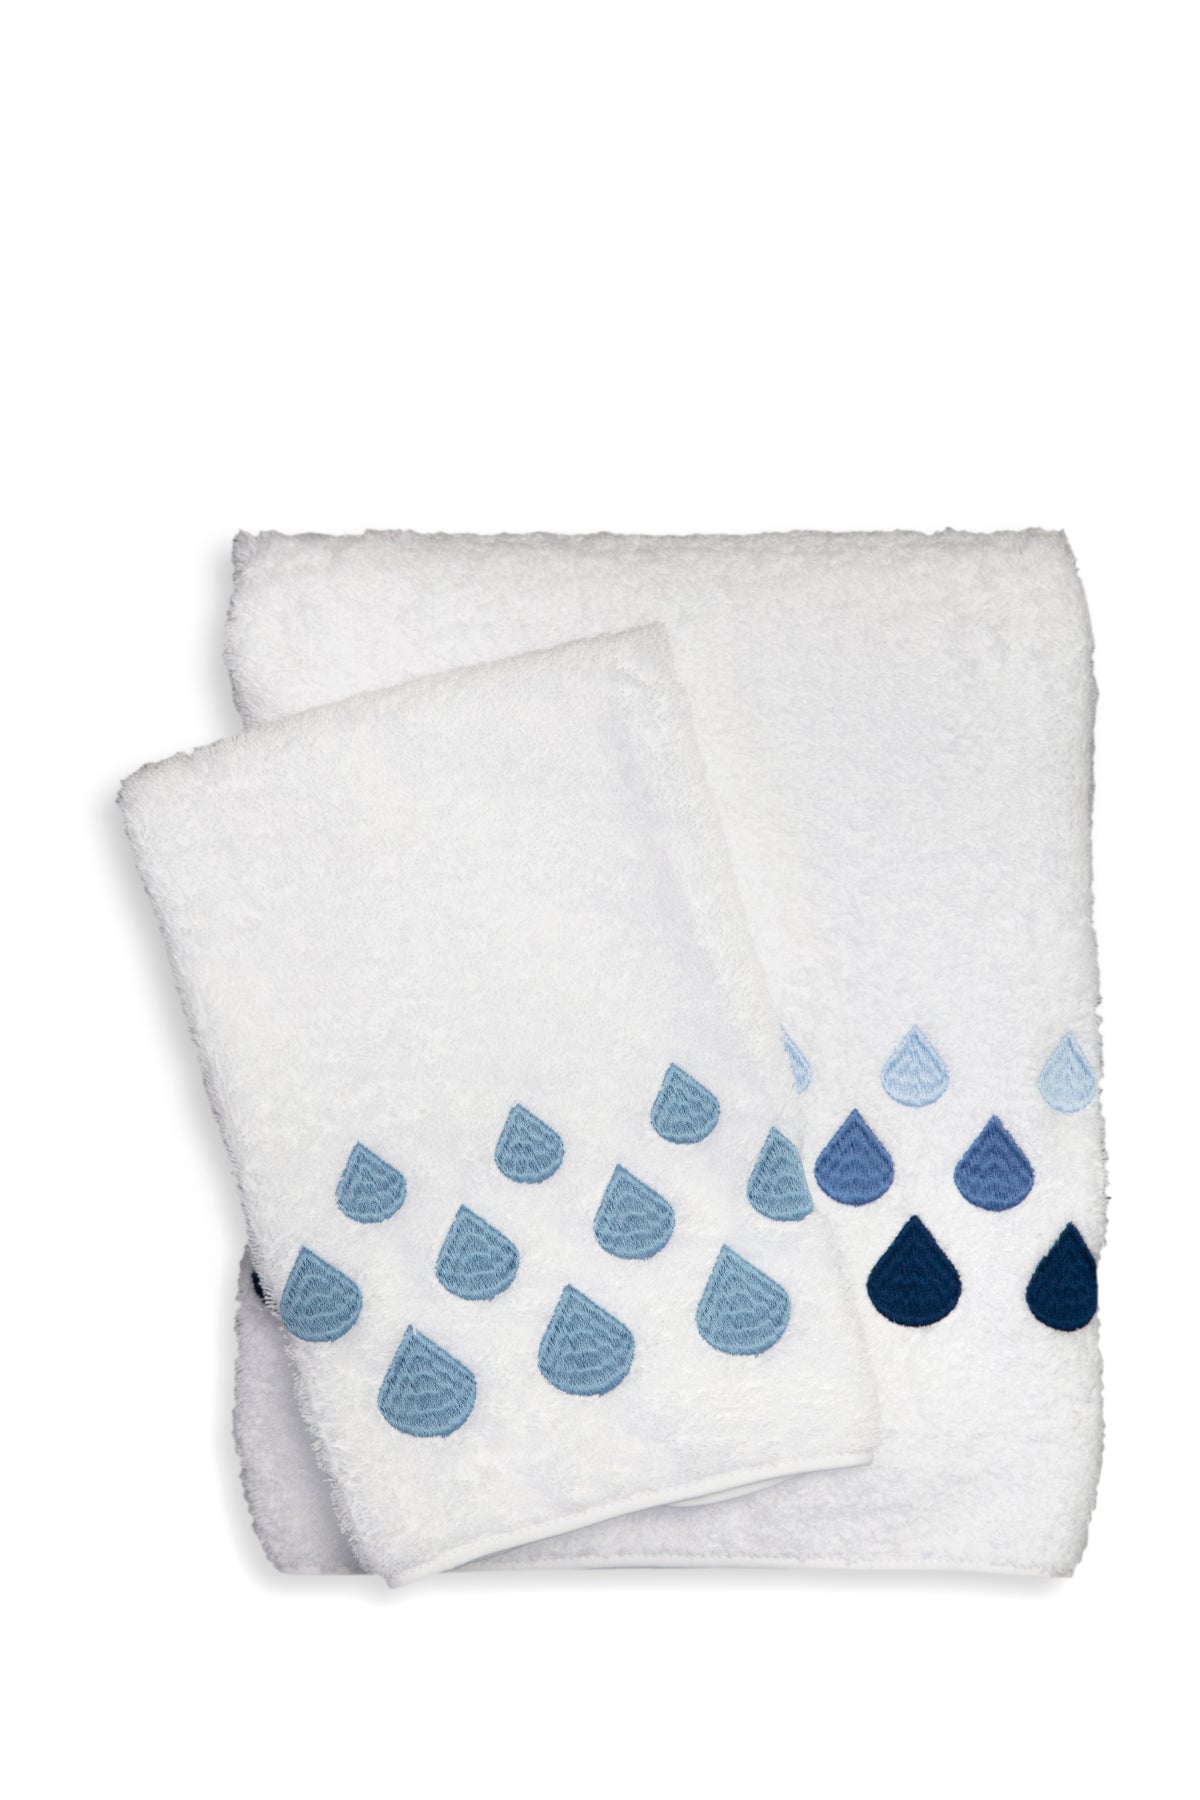 Teardrop Bath Towels By Anali | Pioneer Linens